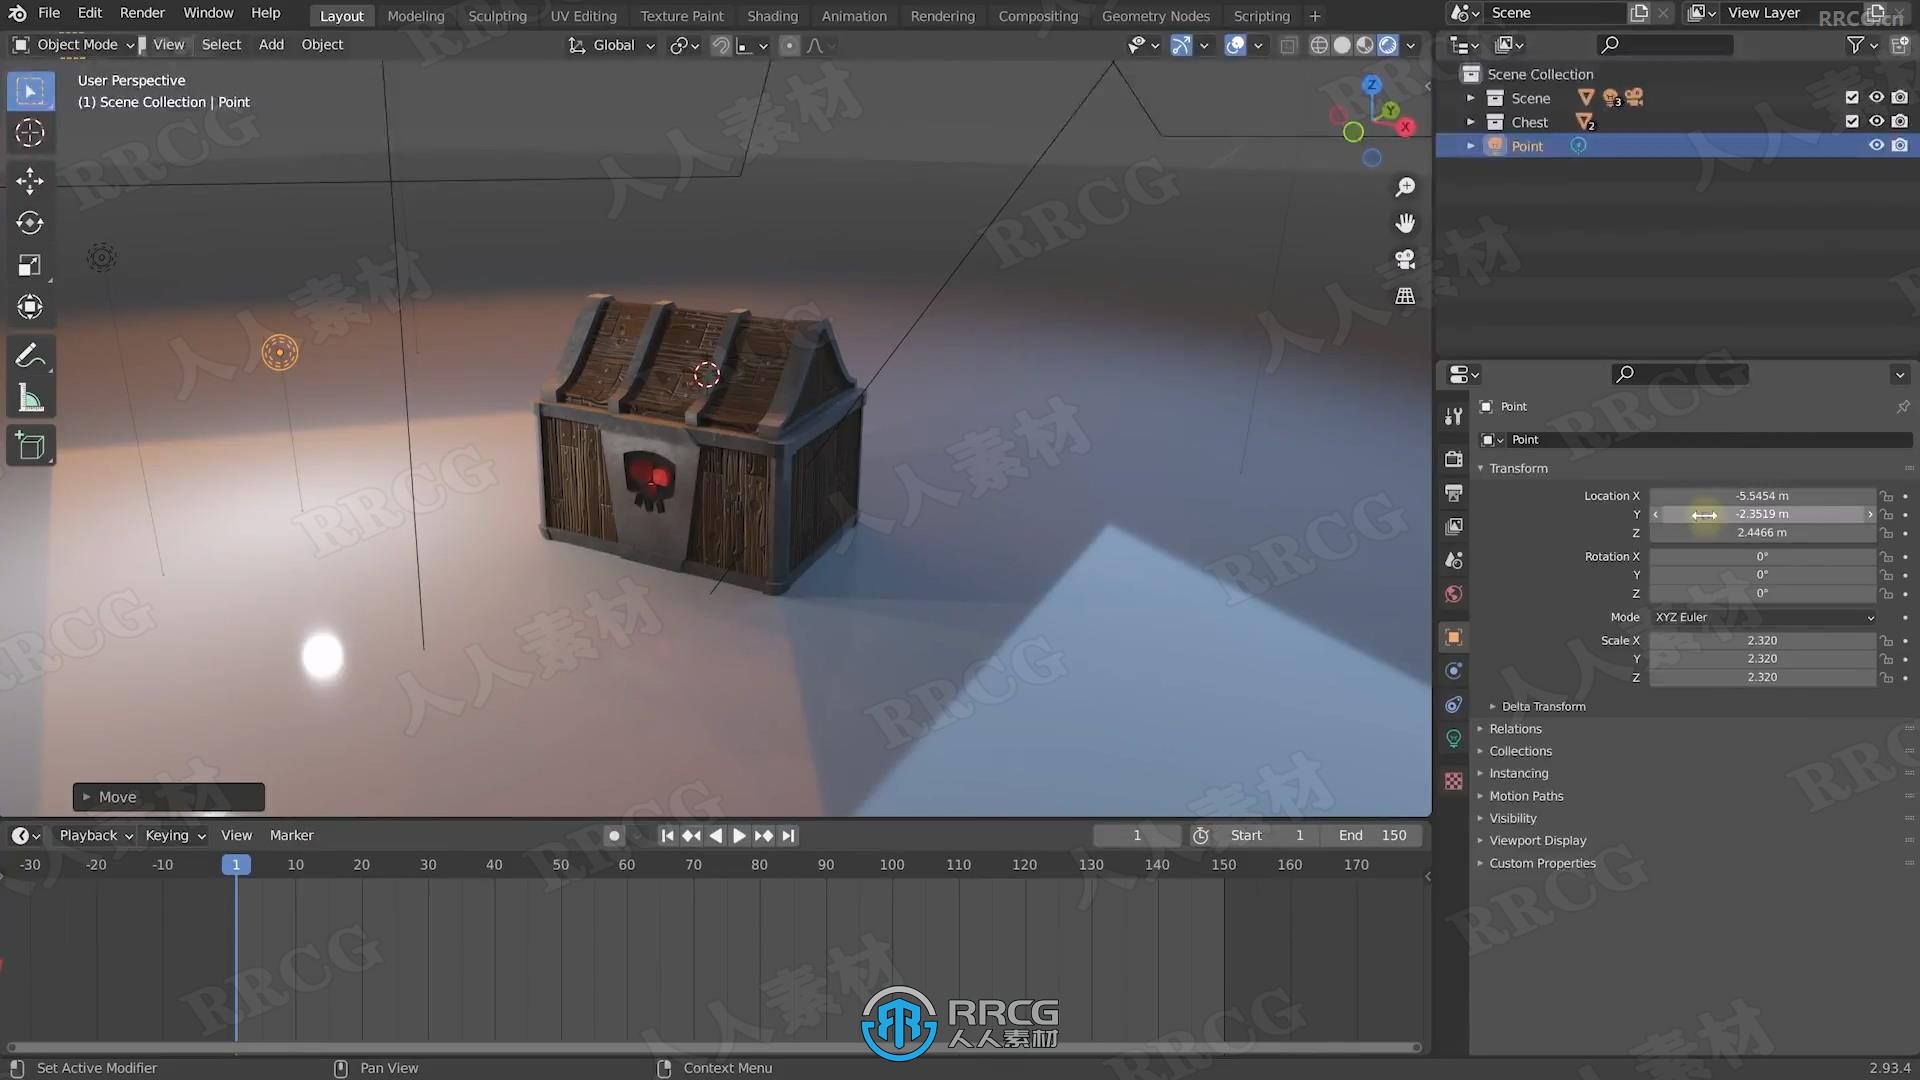 Blender 3D建模与动画初学者入门技术视频教程